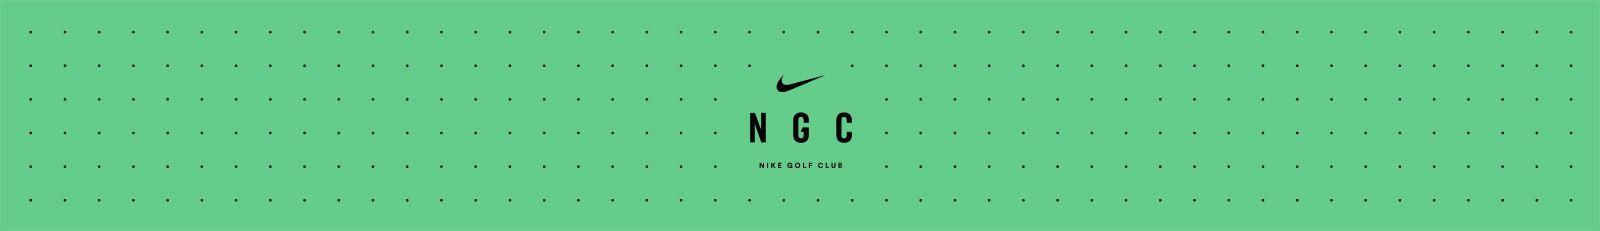 Nike Golf Logo - Golf Tips From Nike Golf Club. Nike.com (UK)